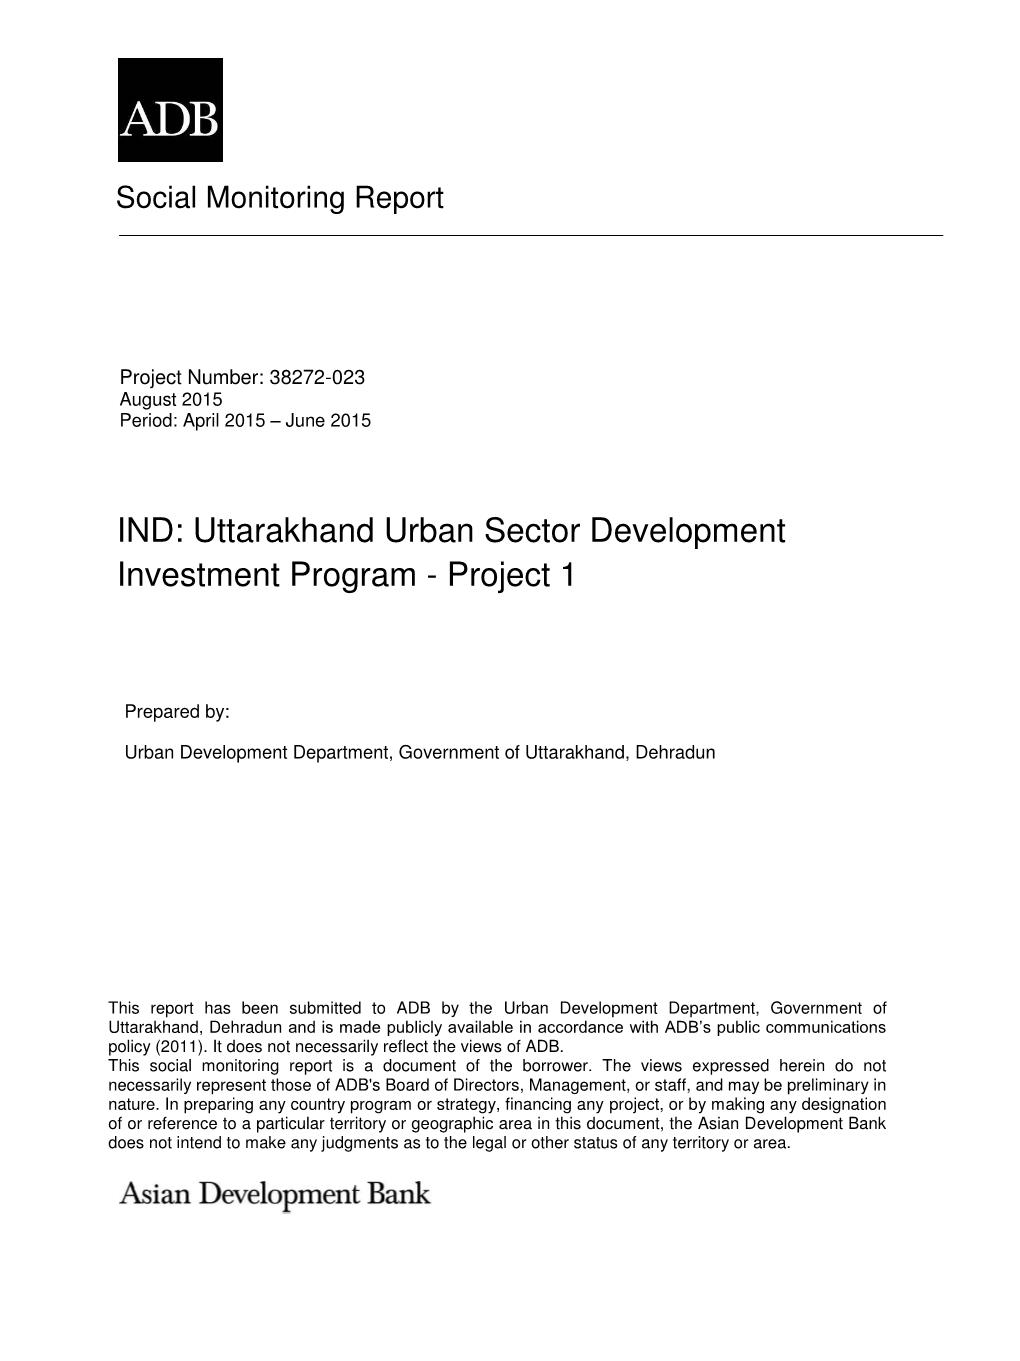 IND: Uttarakhand Urban Sector Development Investment Program